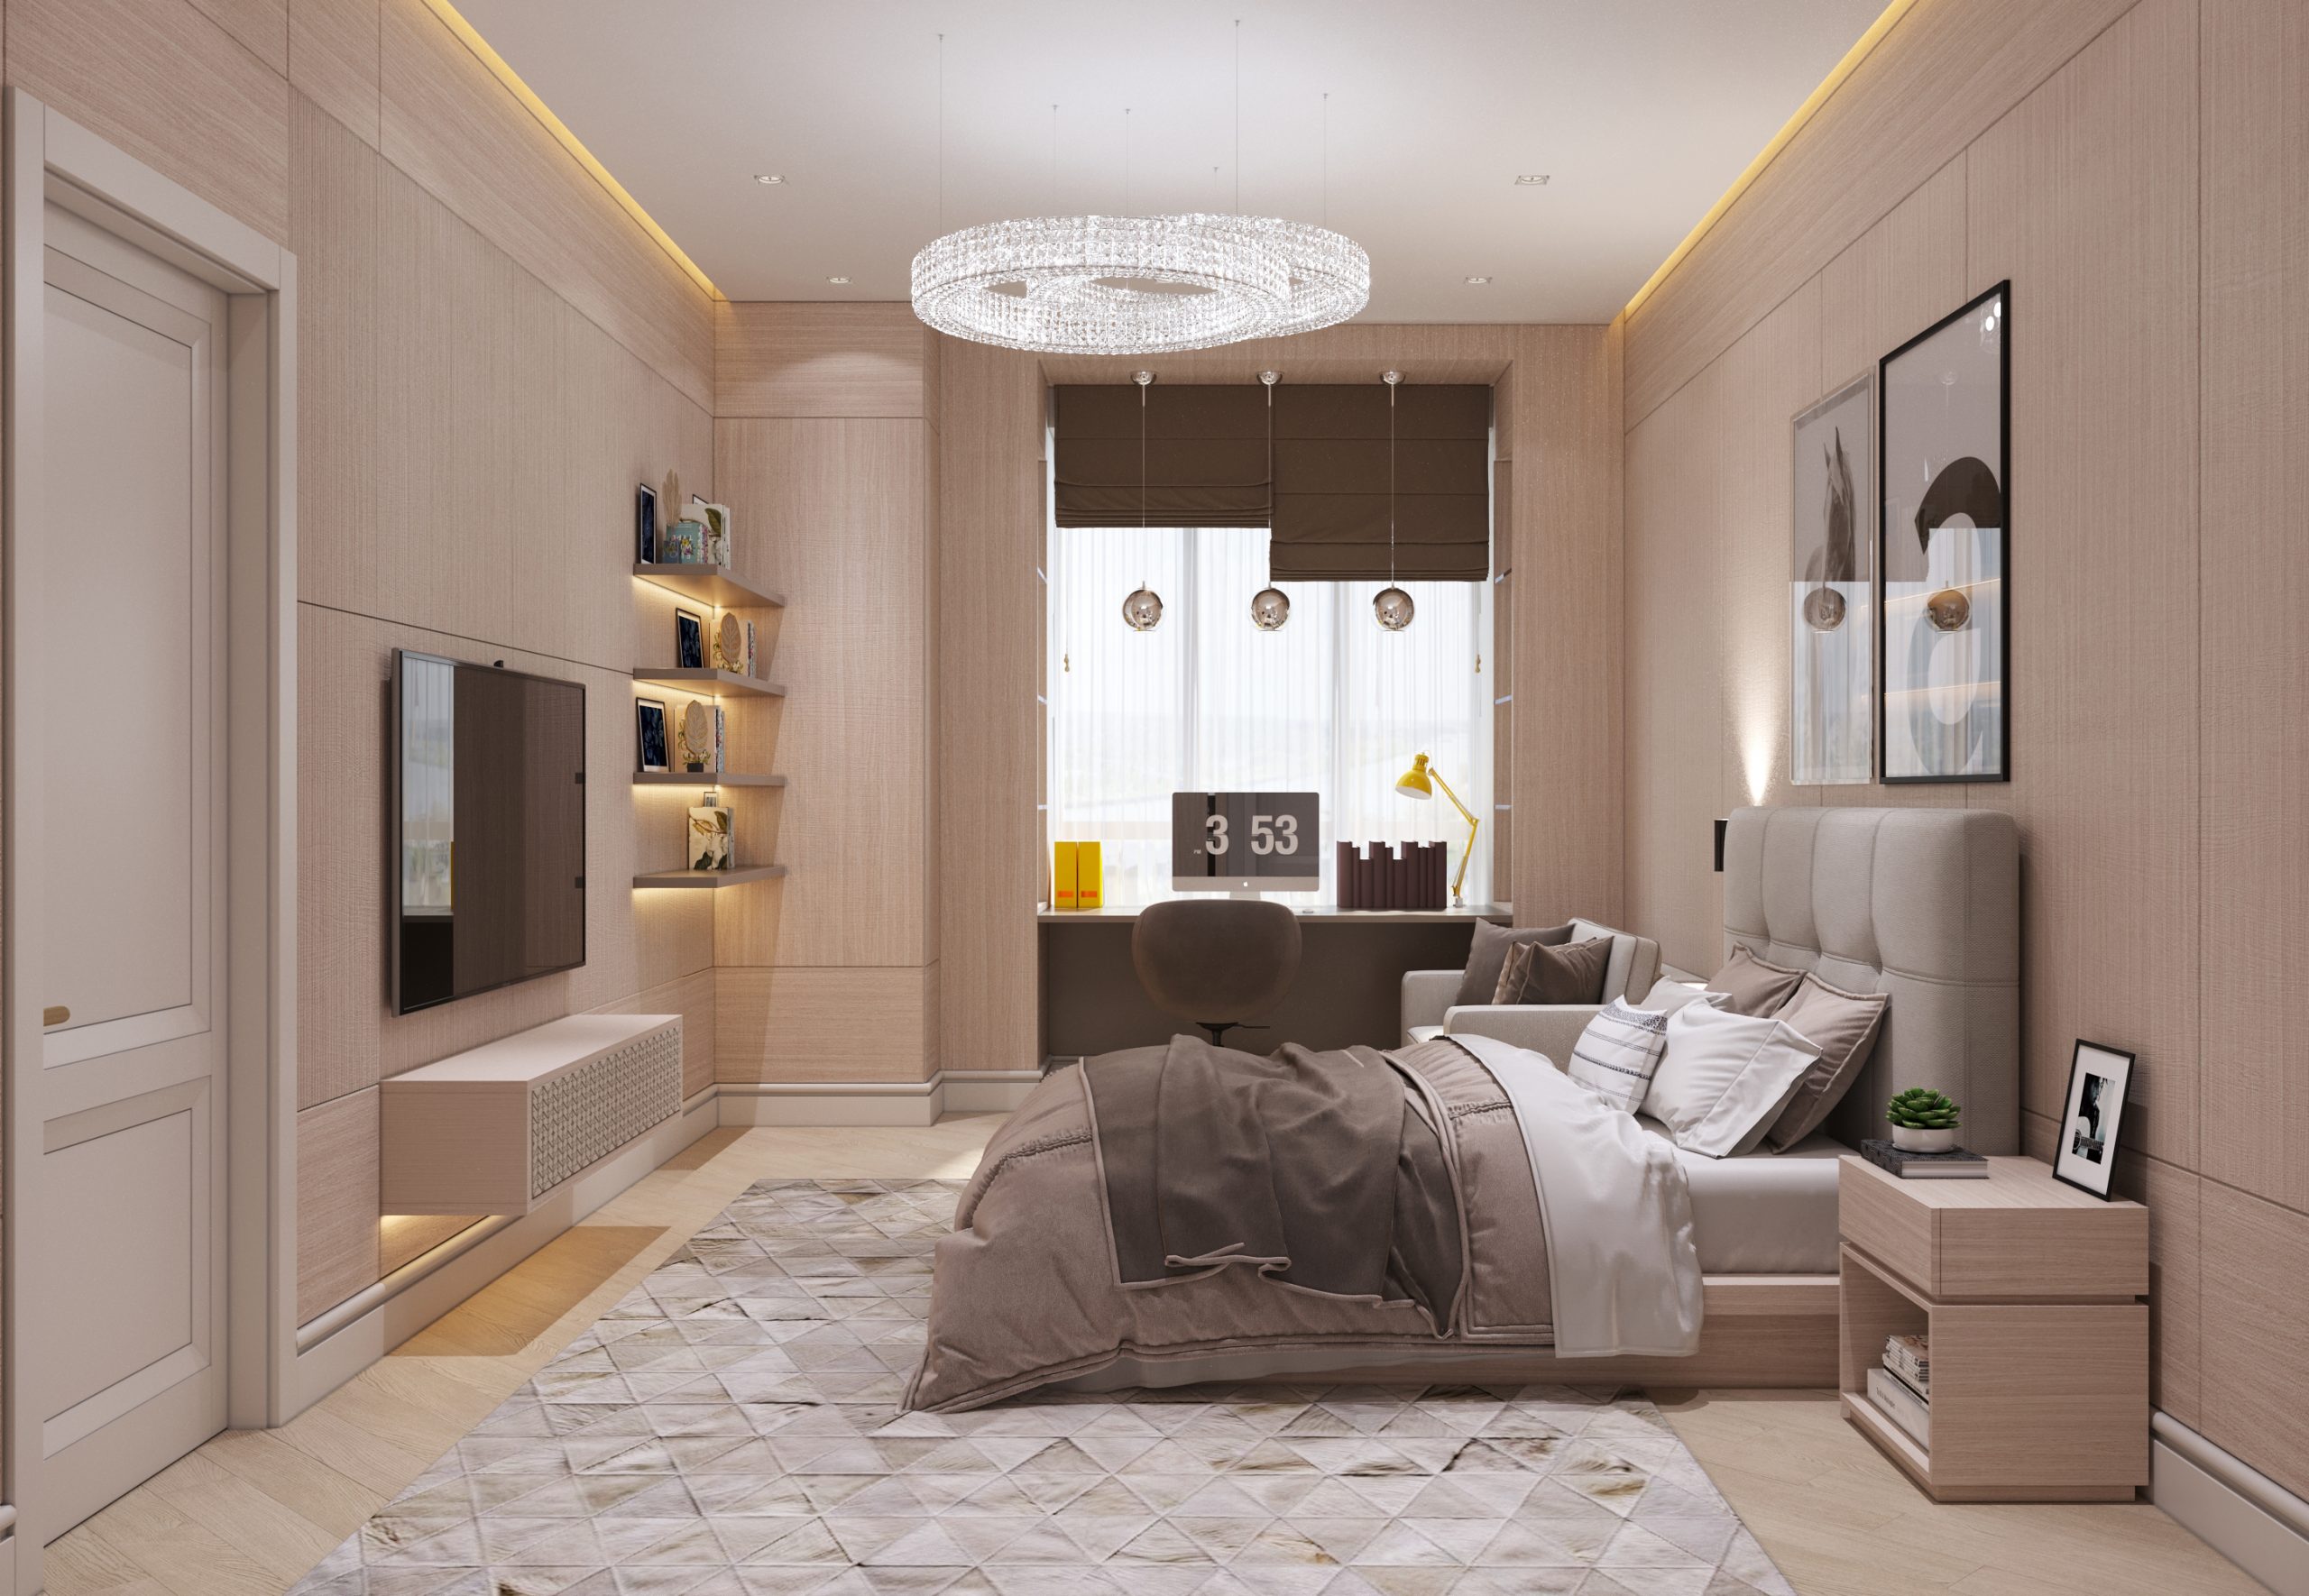 Современный трендовый декор в проекте гостевой спальни в интерьере квартиры